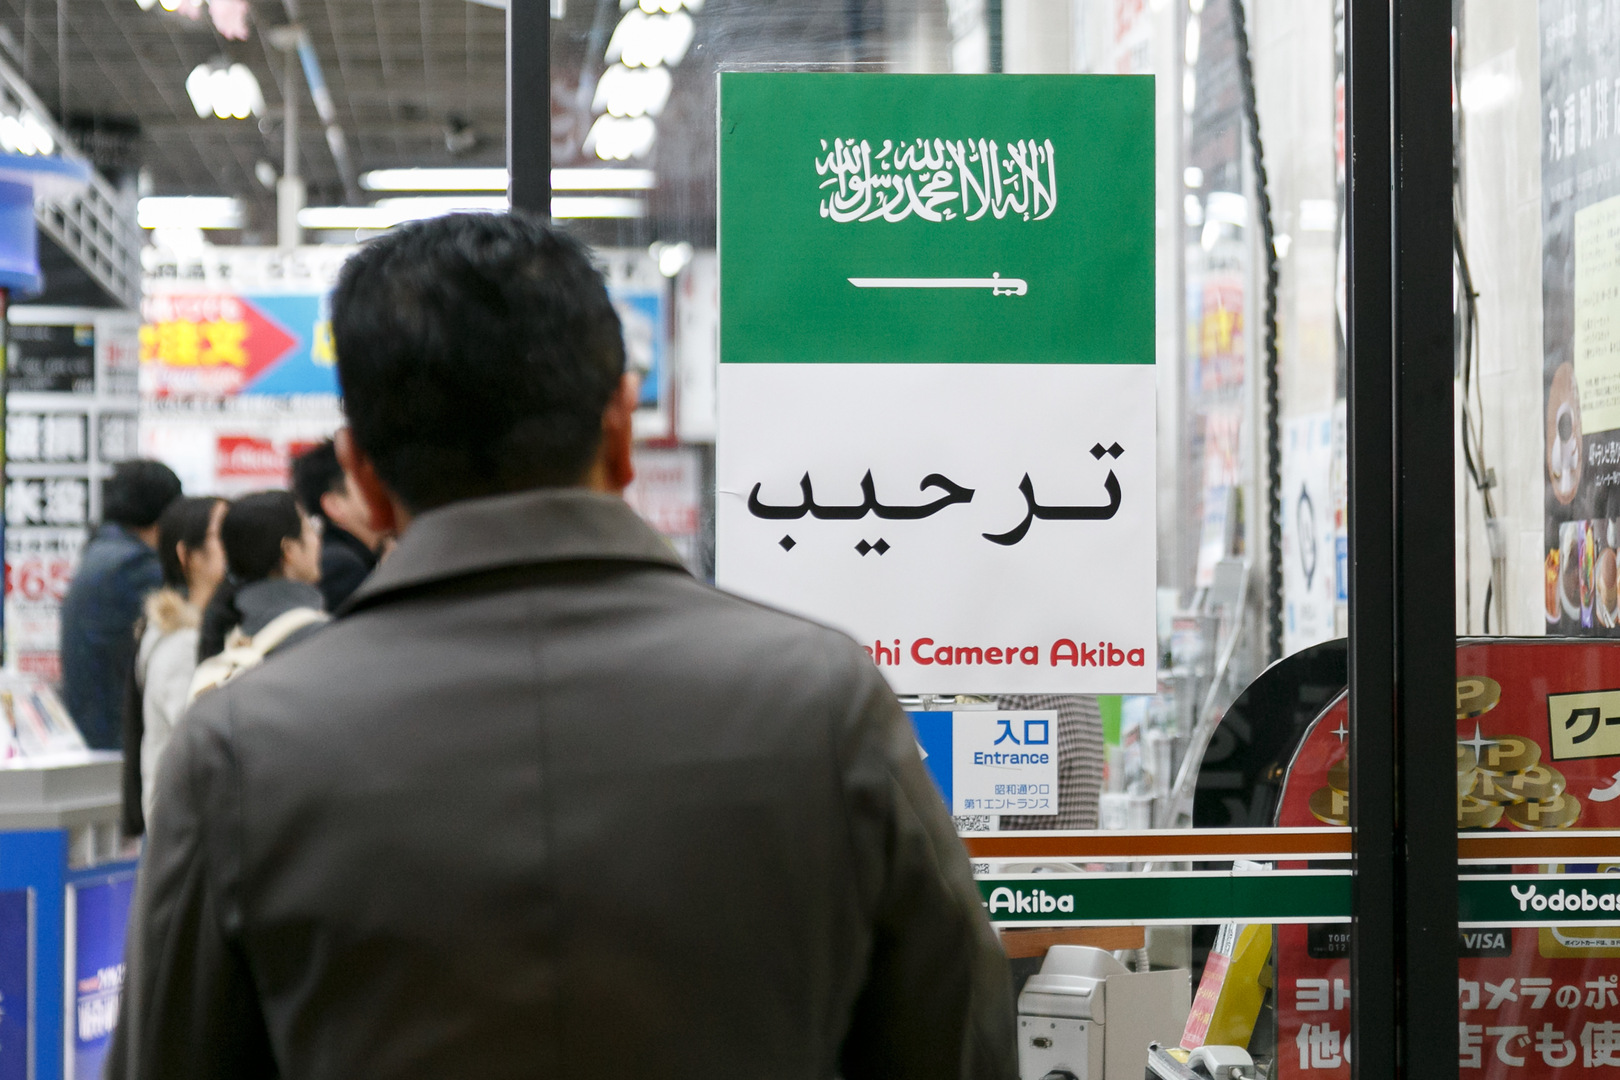 السعودية  تعلن عن تسهيلات في منح تأشيرات الدخول إلى أراضيها وتحدد الفئة